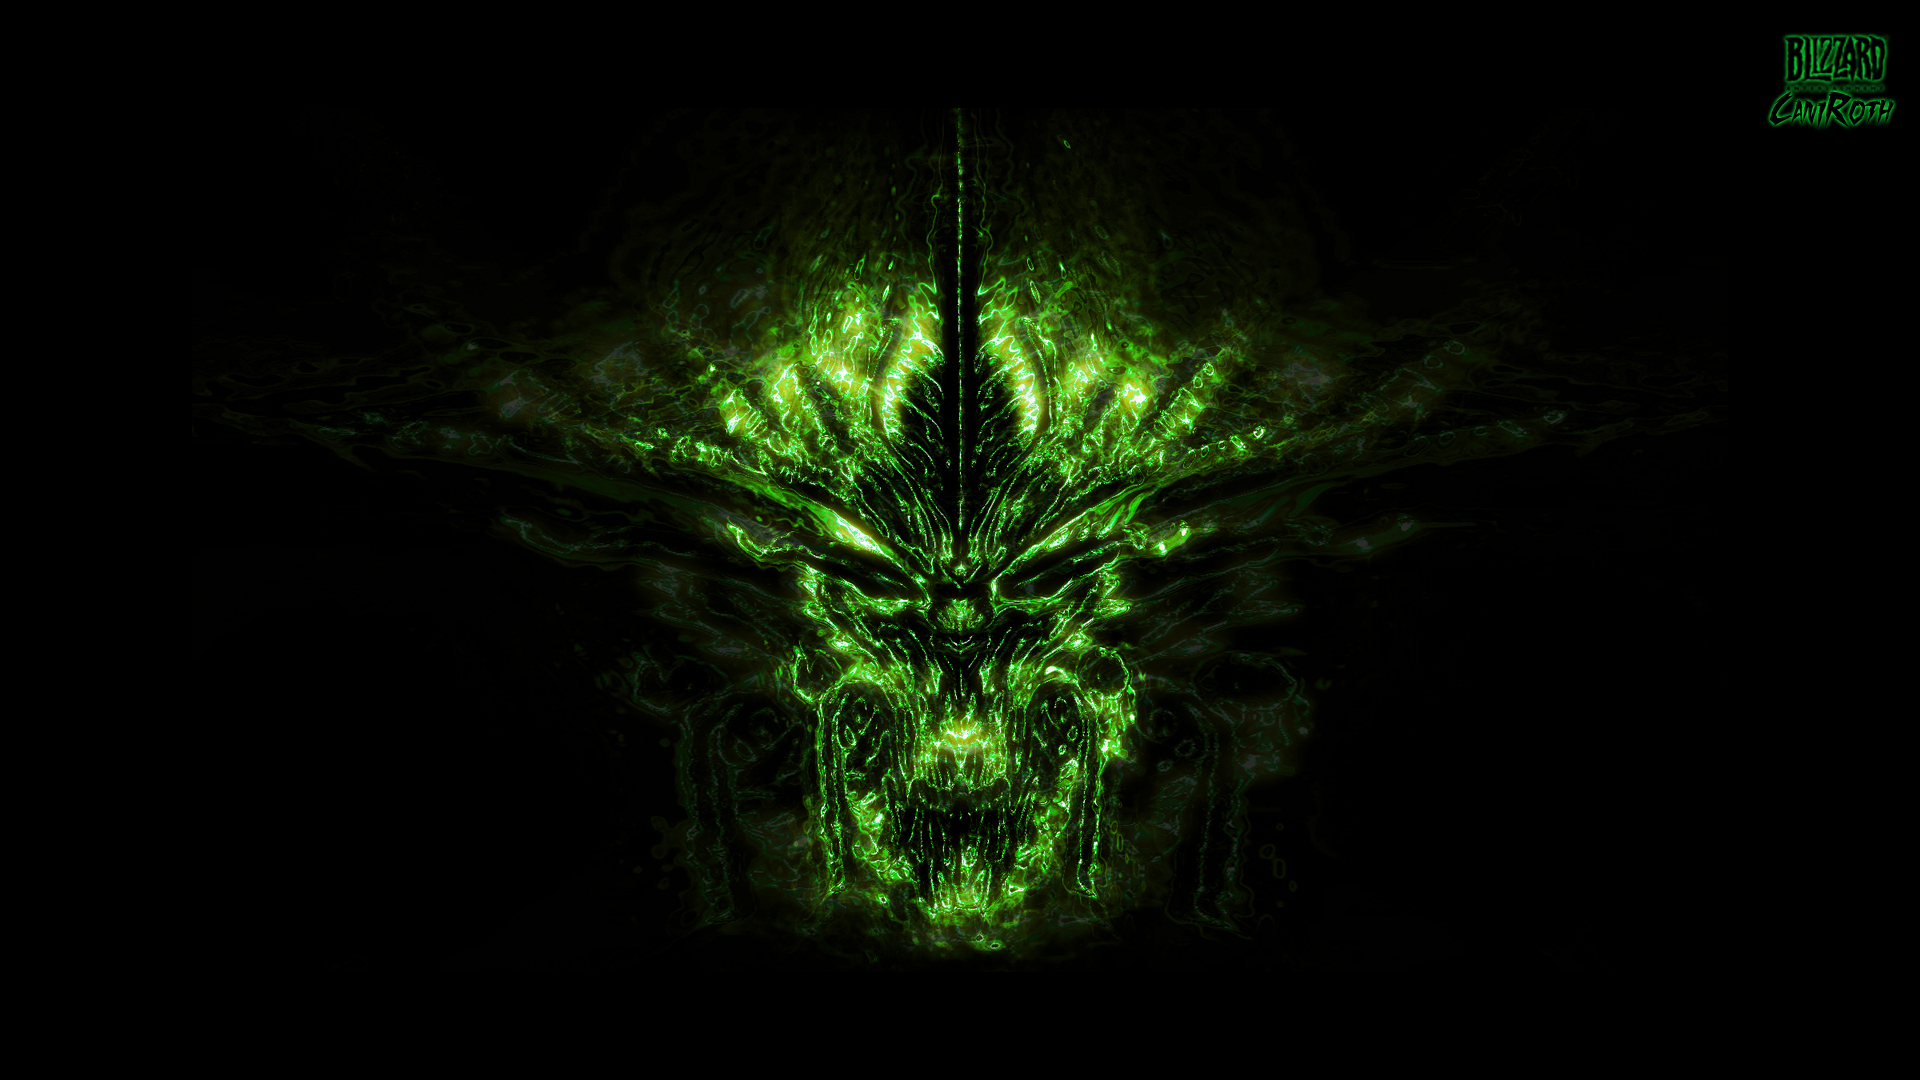 Descarga gratuita de fondo de pantalla para móvil de Diablo Iii, Diablo, Videojuego.